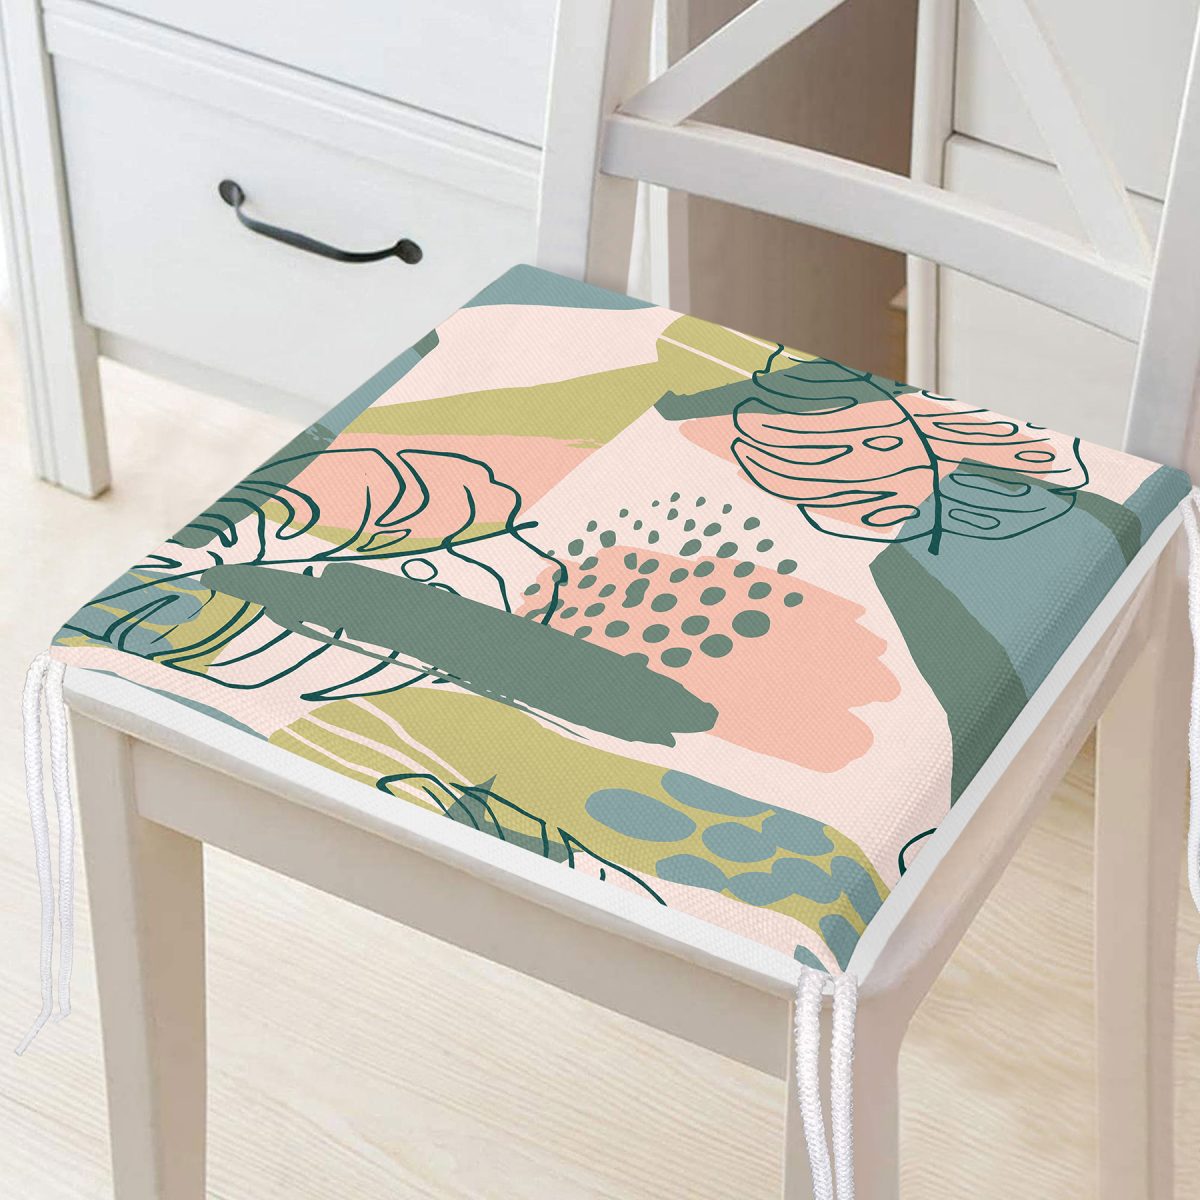 Soft Renkli Zeminde Onedraw Çizimli Yaprak Motifli Dijital Baskılı Modern Fermuarlı Sandalye Minderi Realhomes